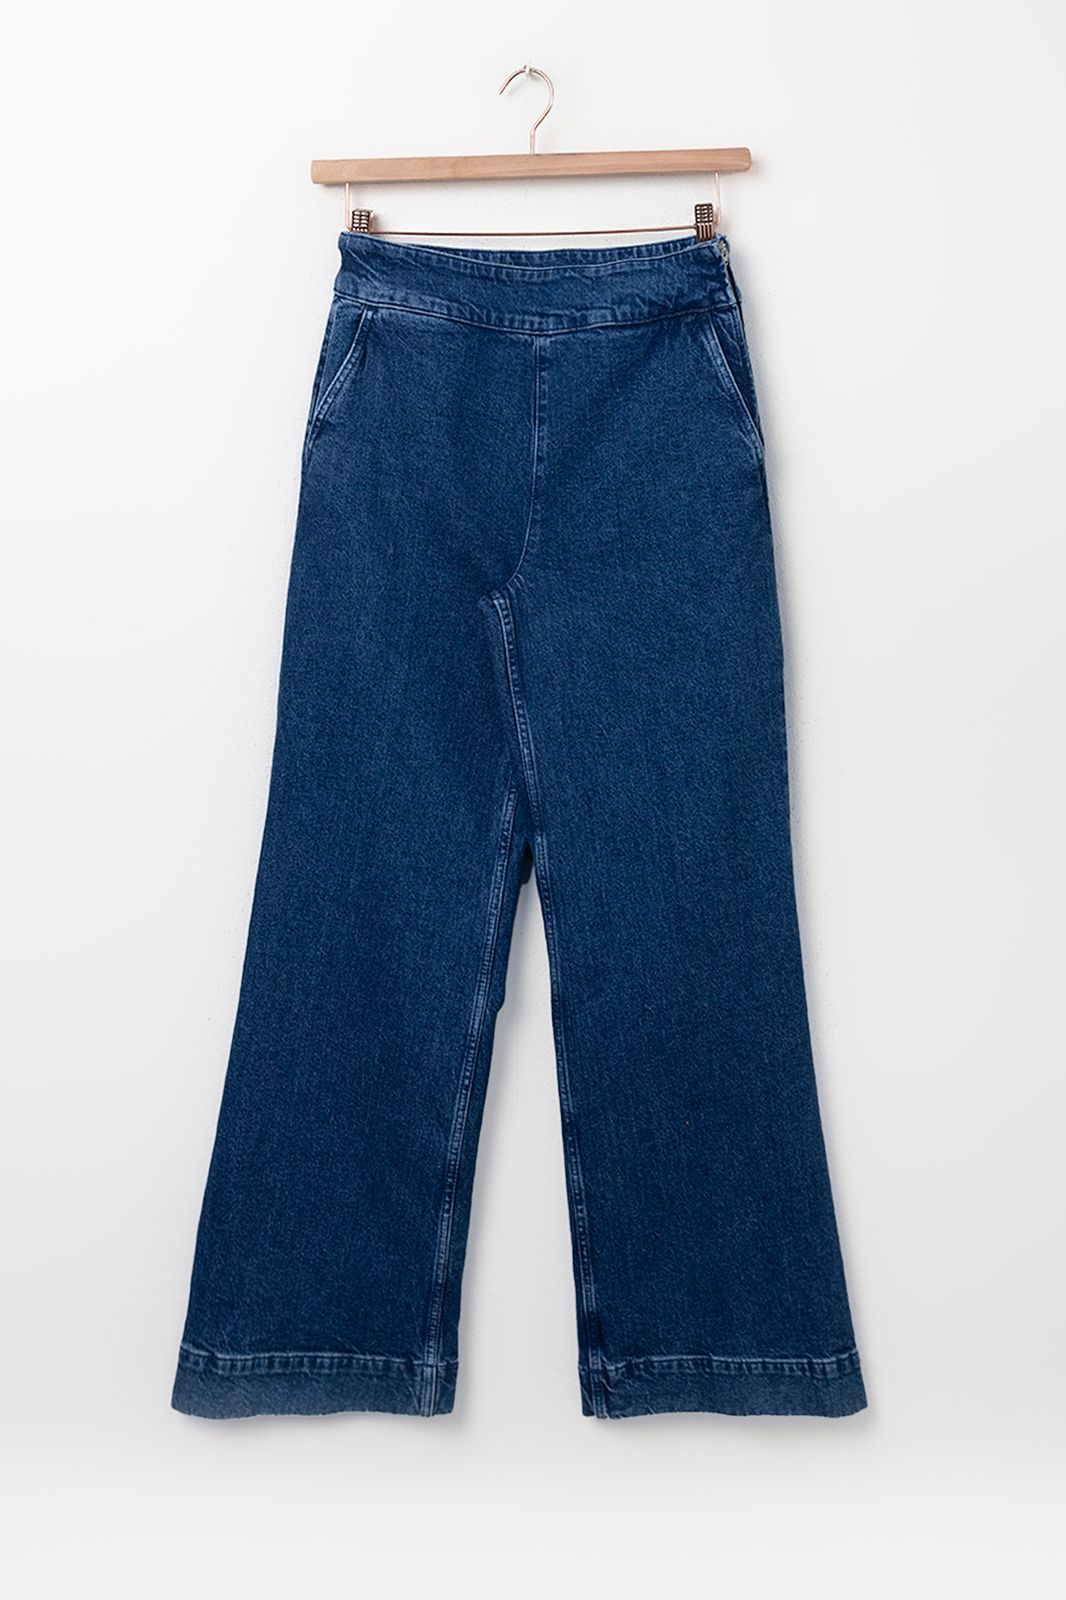 Ausgestellt Jeans mit Reißverschluss - dunkelblau